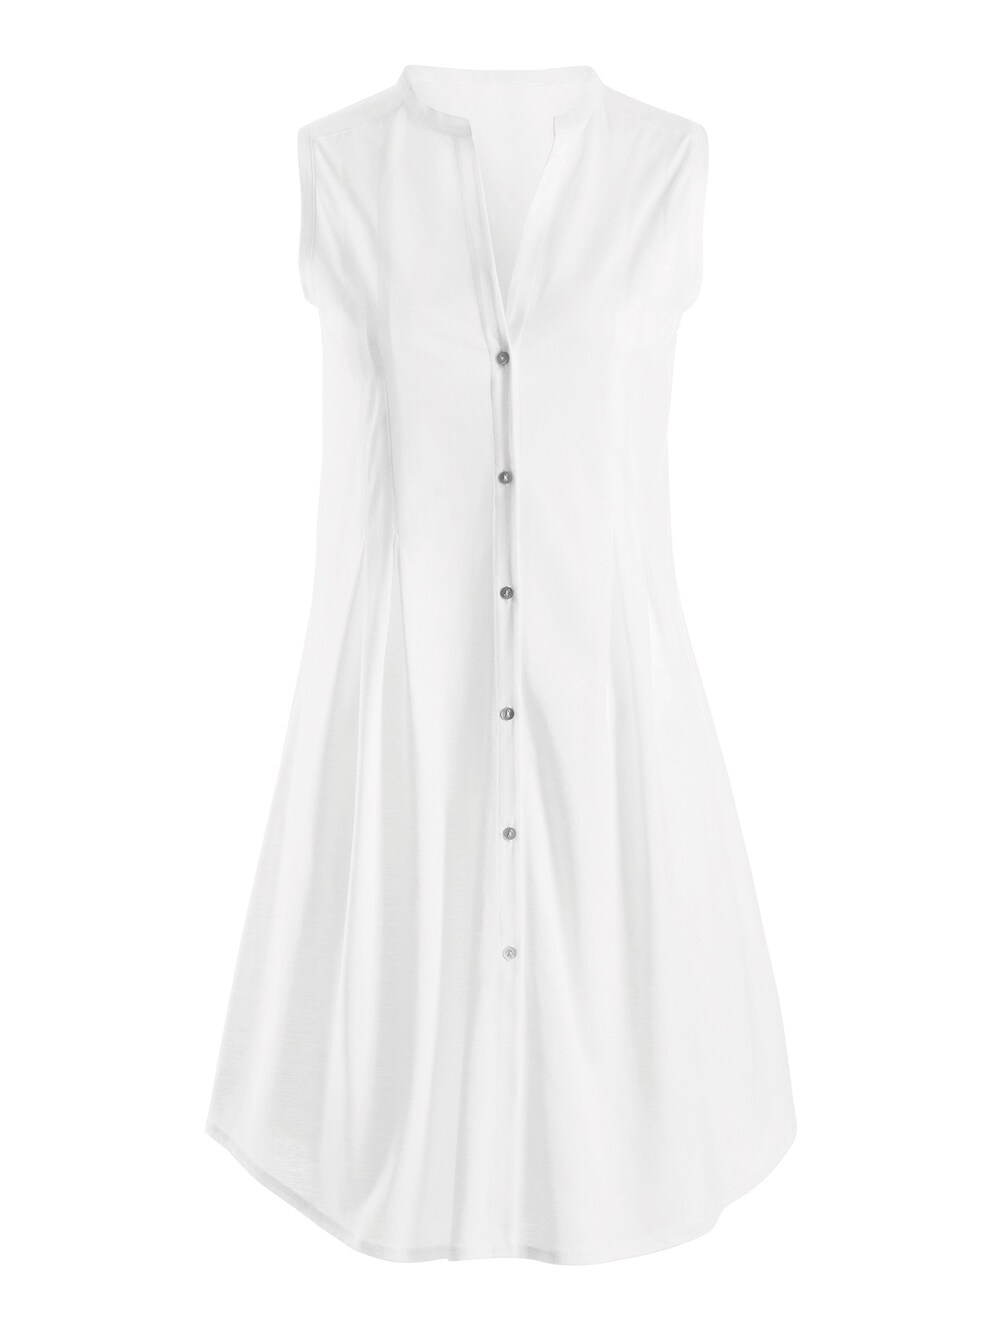 Ночная рубашка Hanro Cotton Deluxe 90cm, белый фото